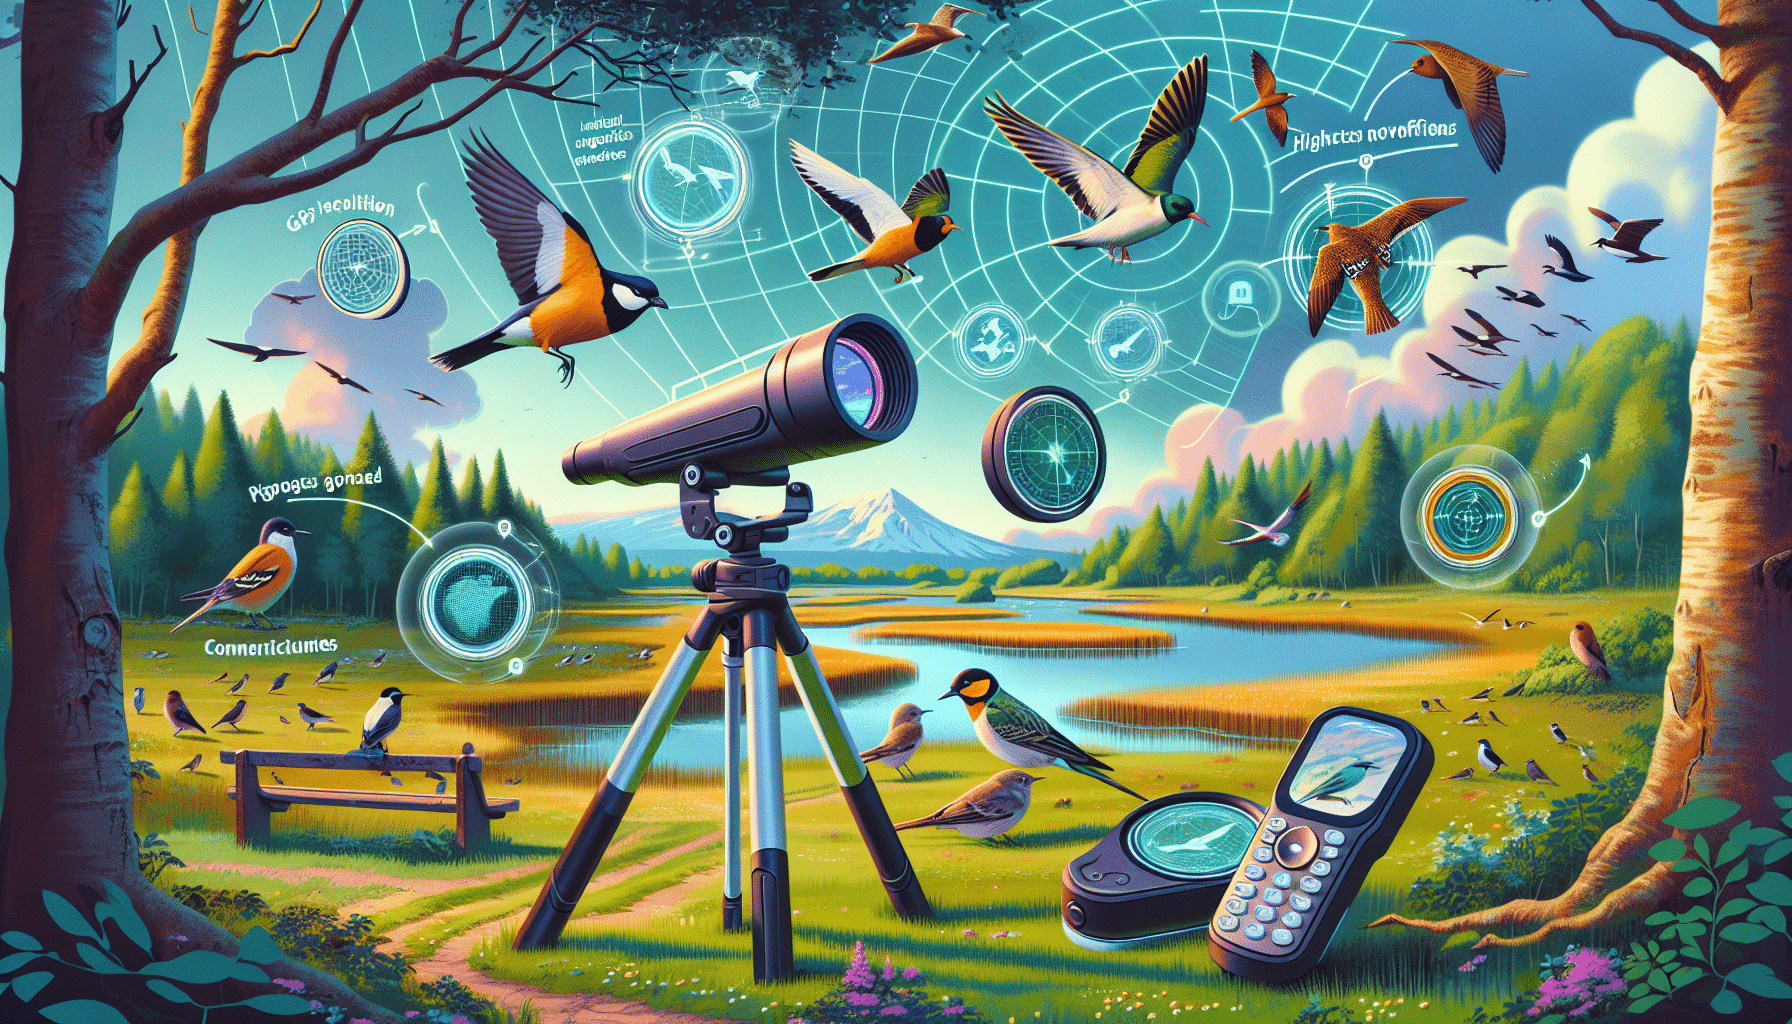 explorez comment ces innovations technologiques pourraient révolutionner l’expérience d’observation des oiseaux et l’amener vers de nouveaux sommets.